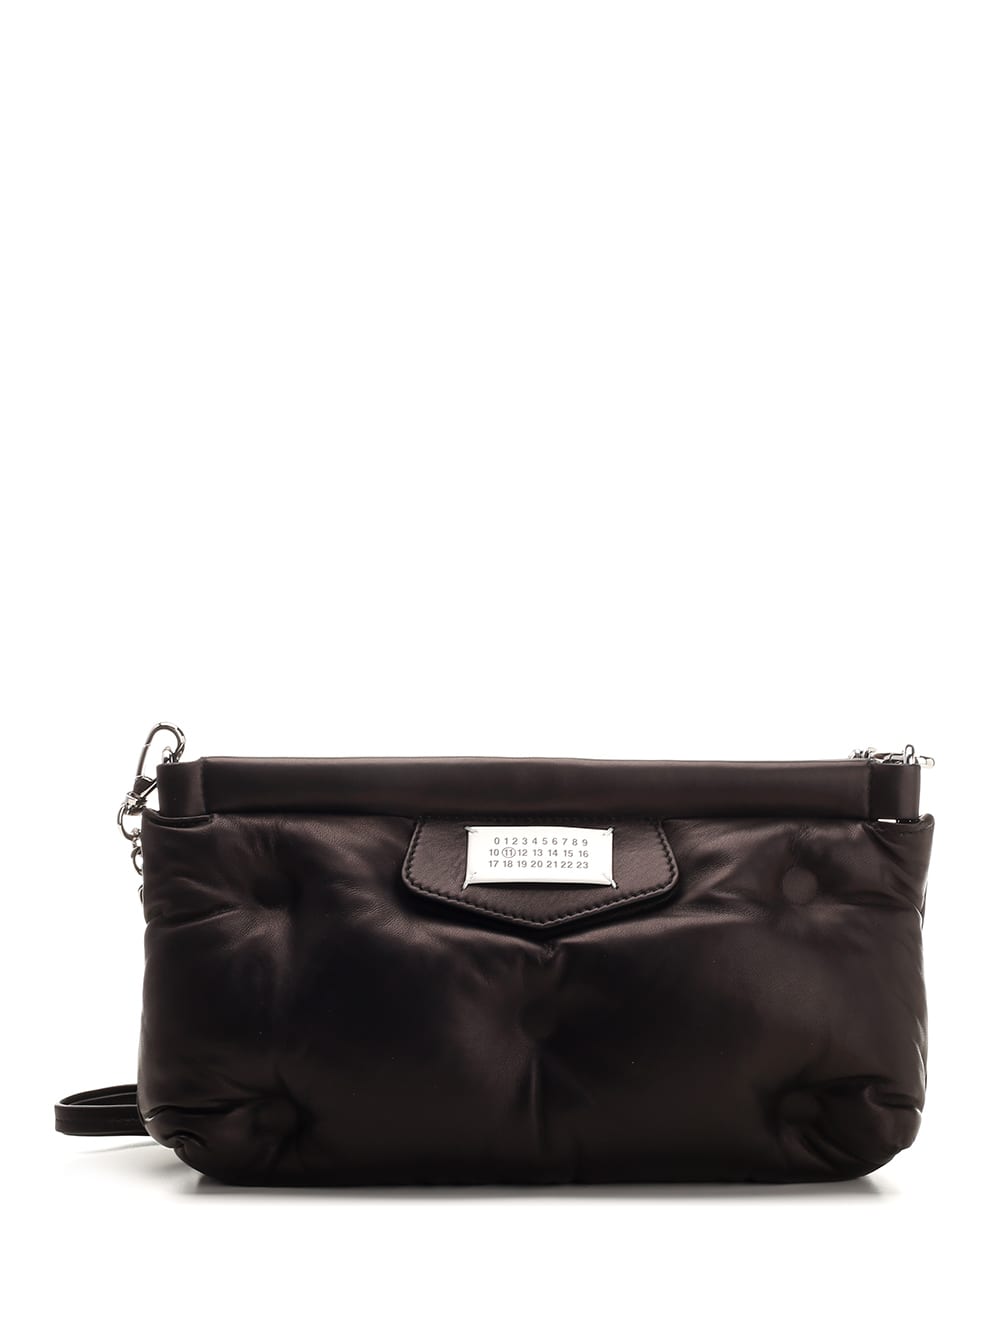 Maison Margiela Glam Slam Shoulder Bag In Black